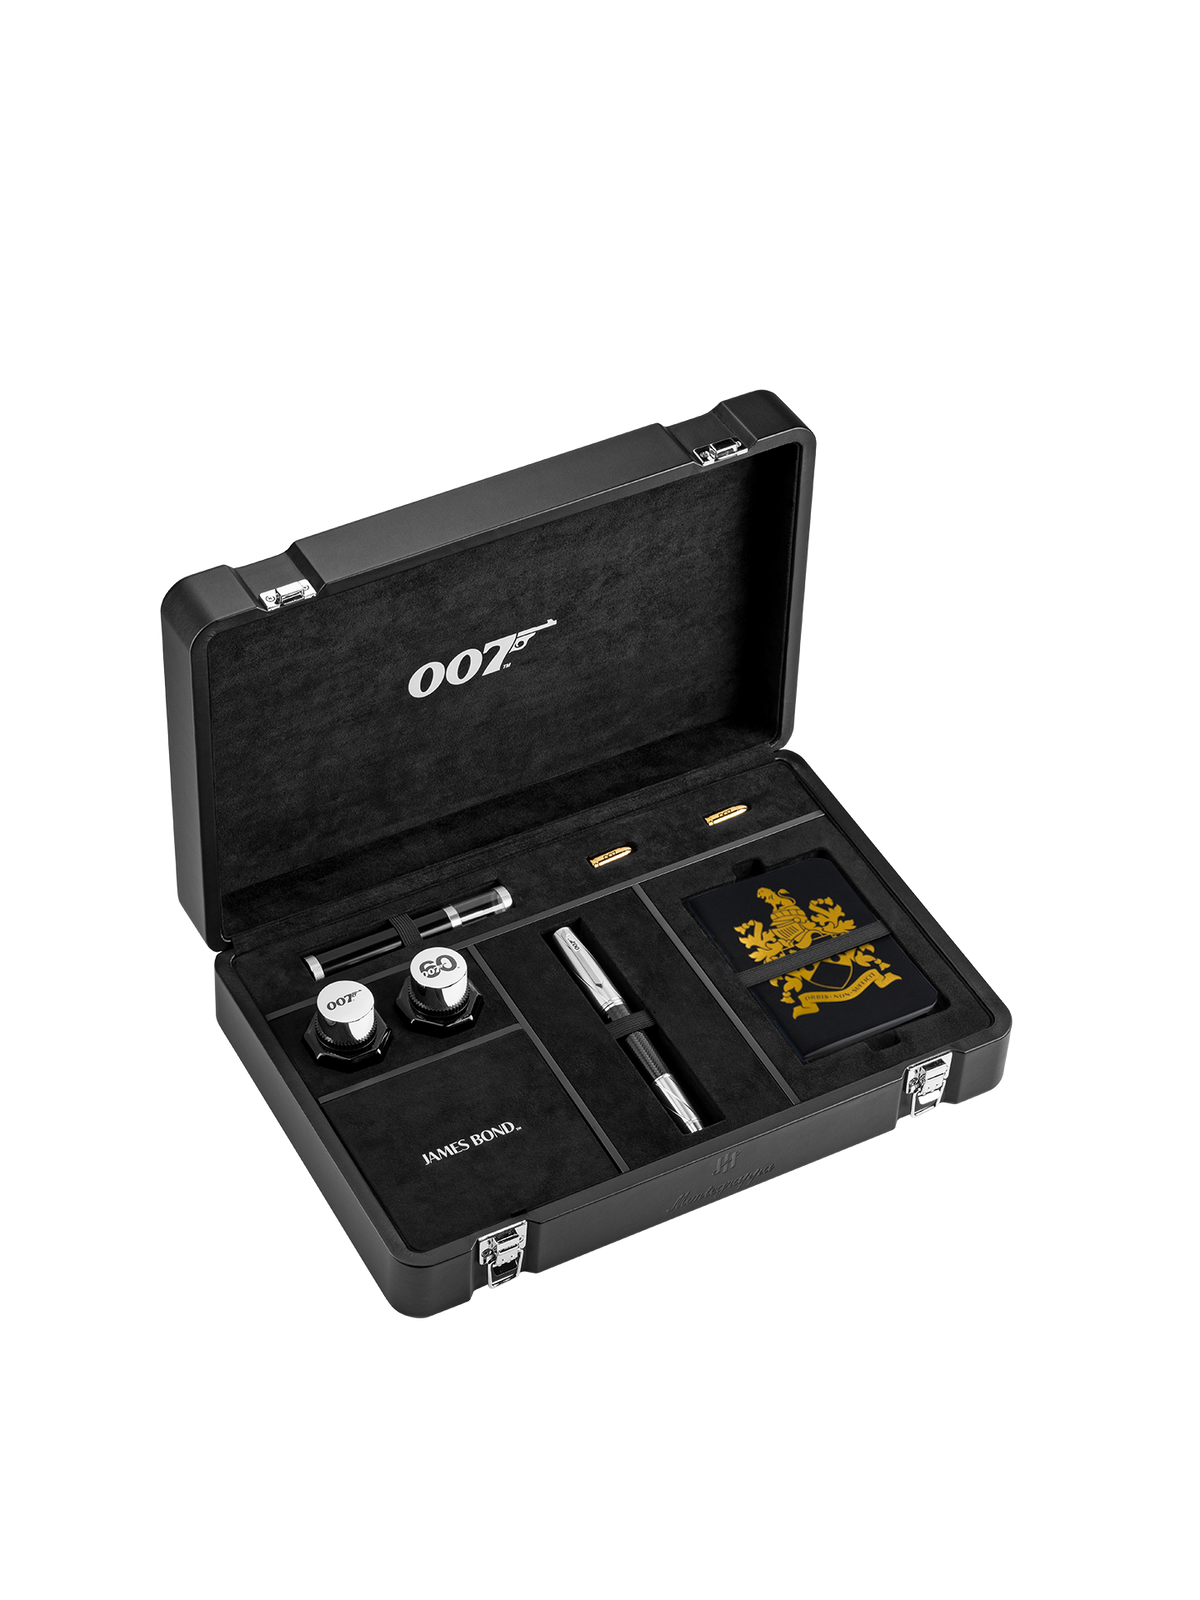 James Bond 007 Spymaster Duo Füllfederhalter - Nummerierte Edition - Von Montegrappa